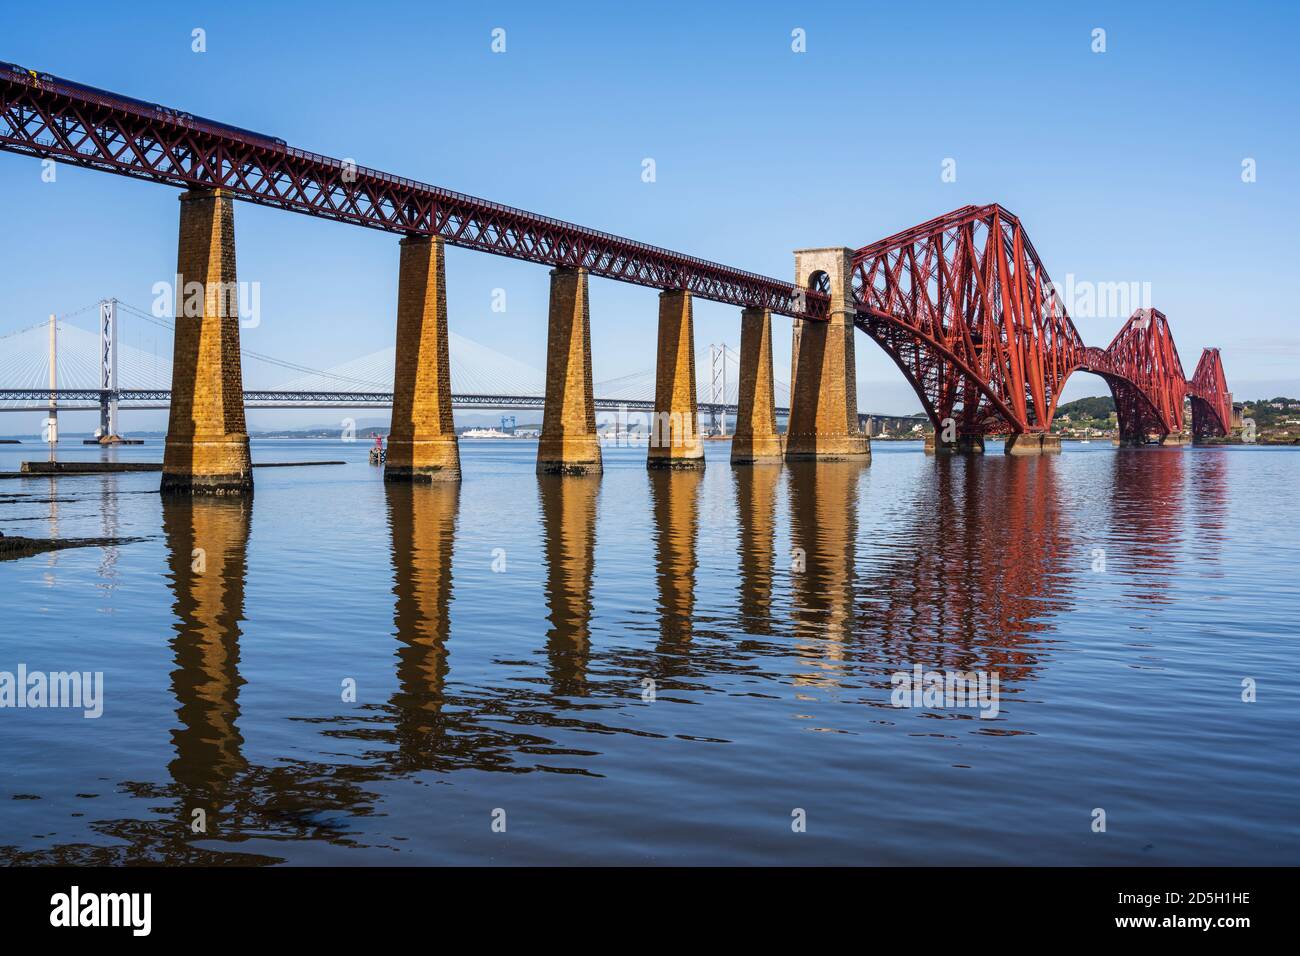 Forth Rail Bridge de l'autre côté de la rivière Forth à Fife, vue depuis South Queensferry, Écosse, Royaume-Uni Banque D'Images